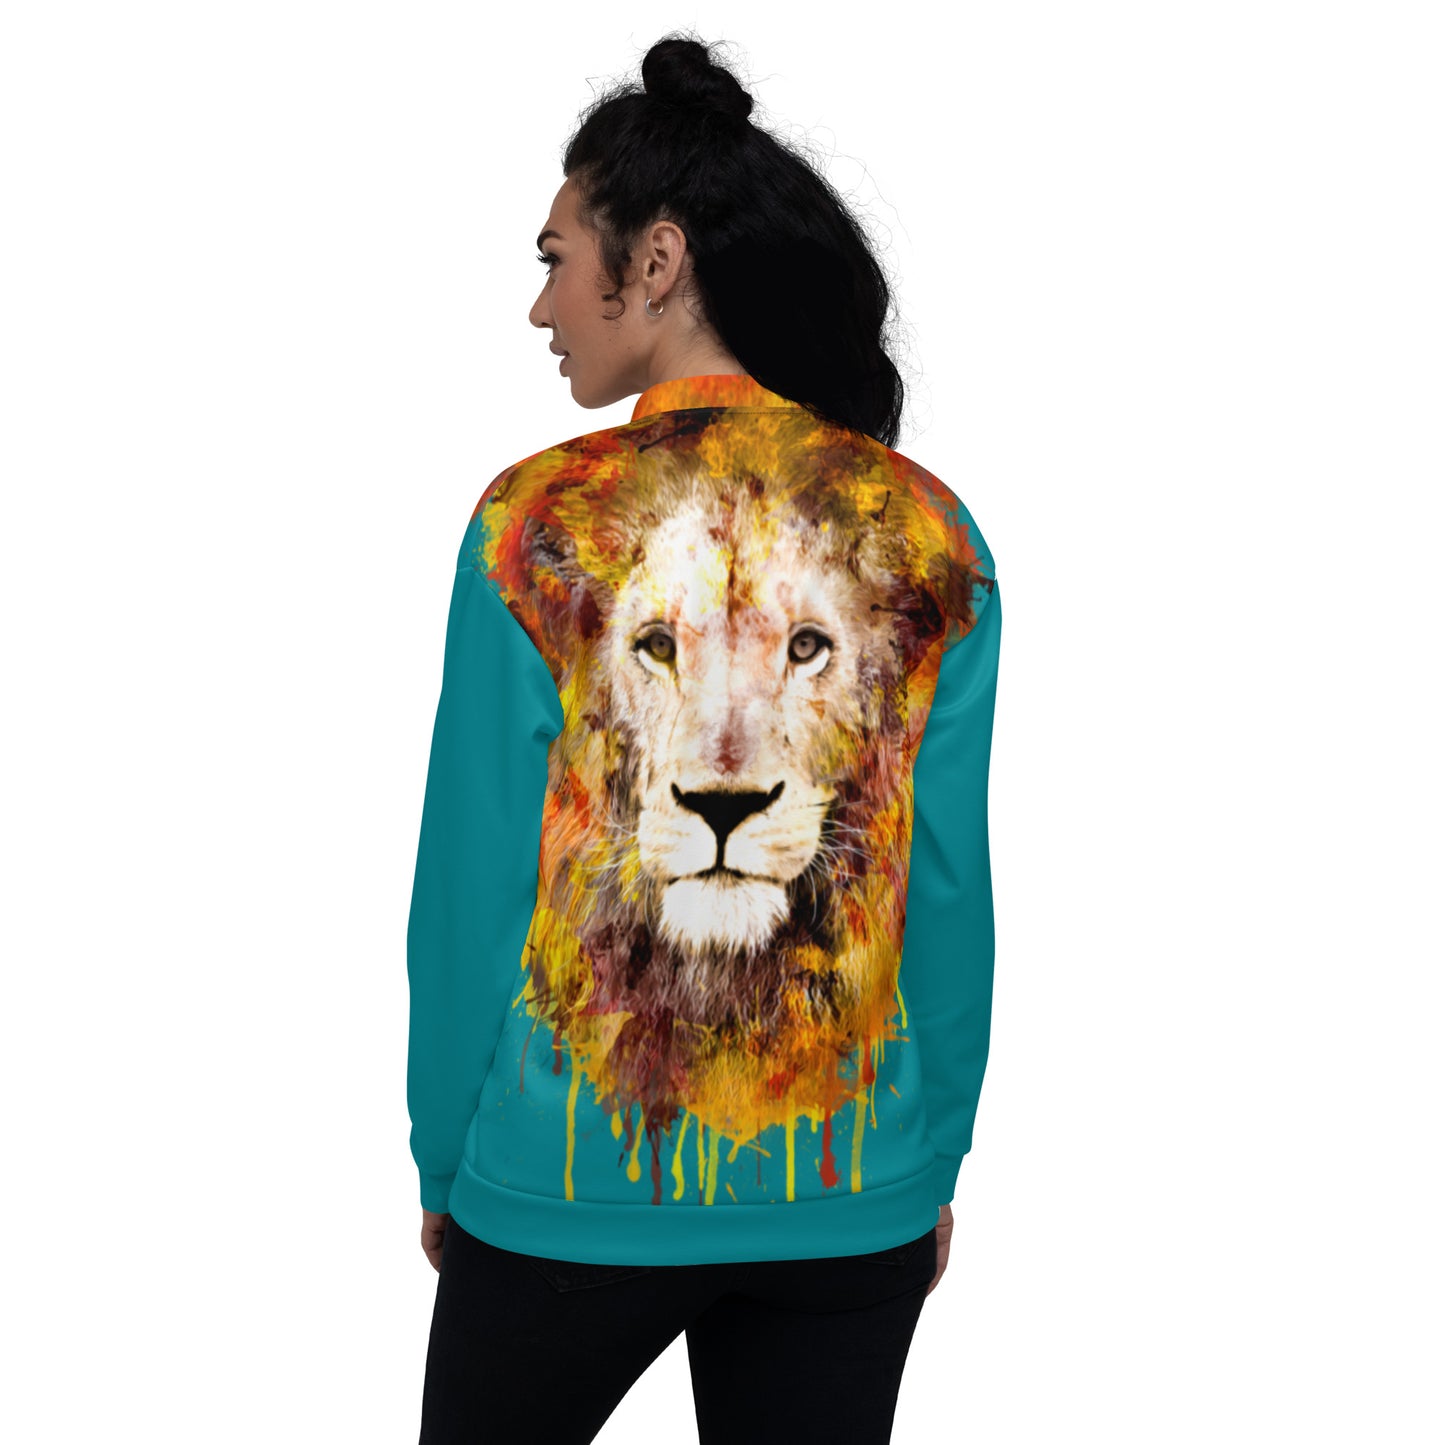 Teal Bomber Jacket - OG Hippie Chick (large Lion on back)